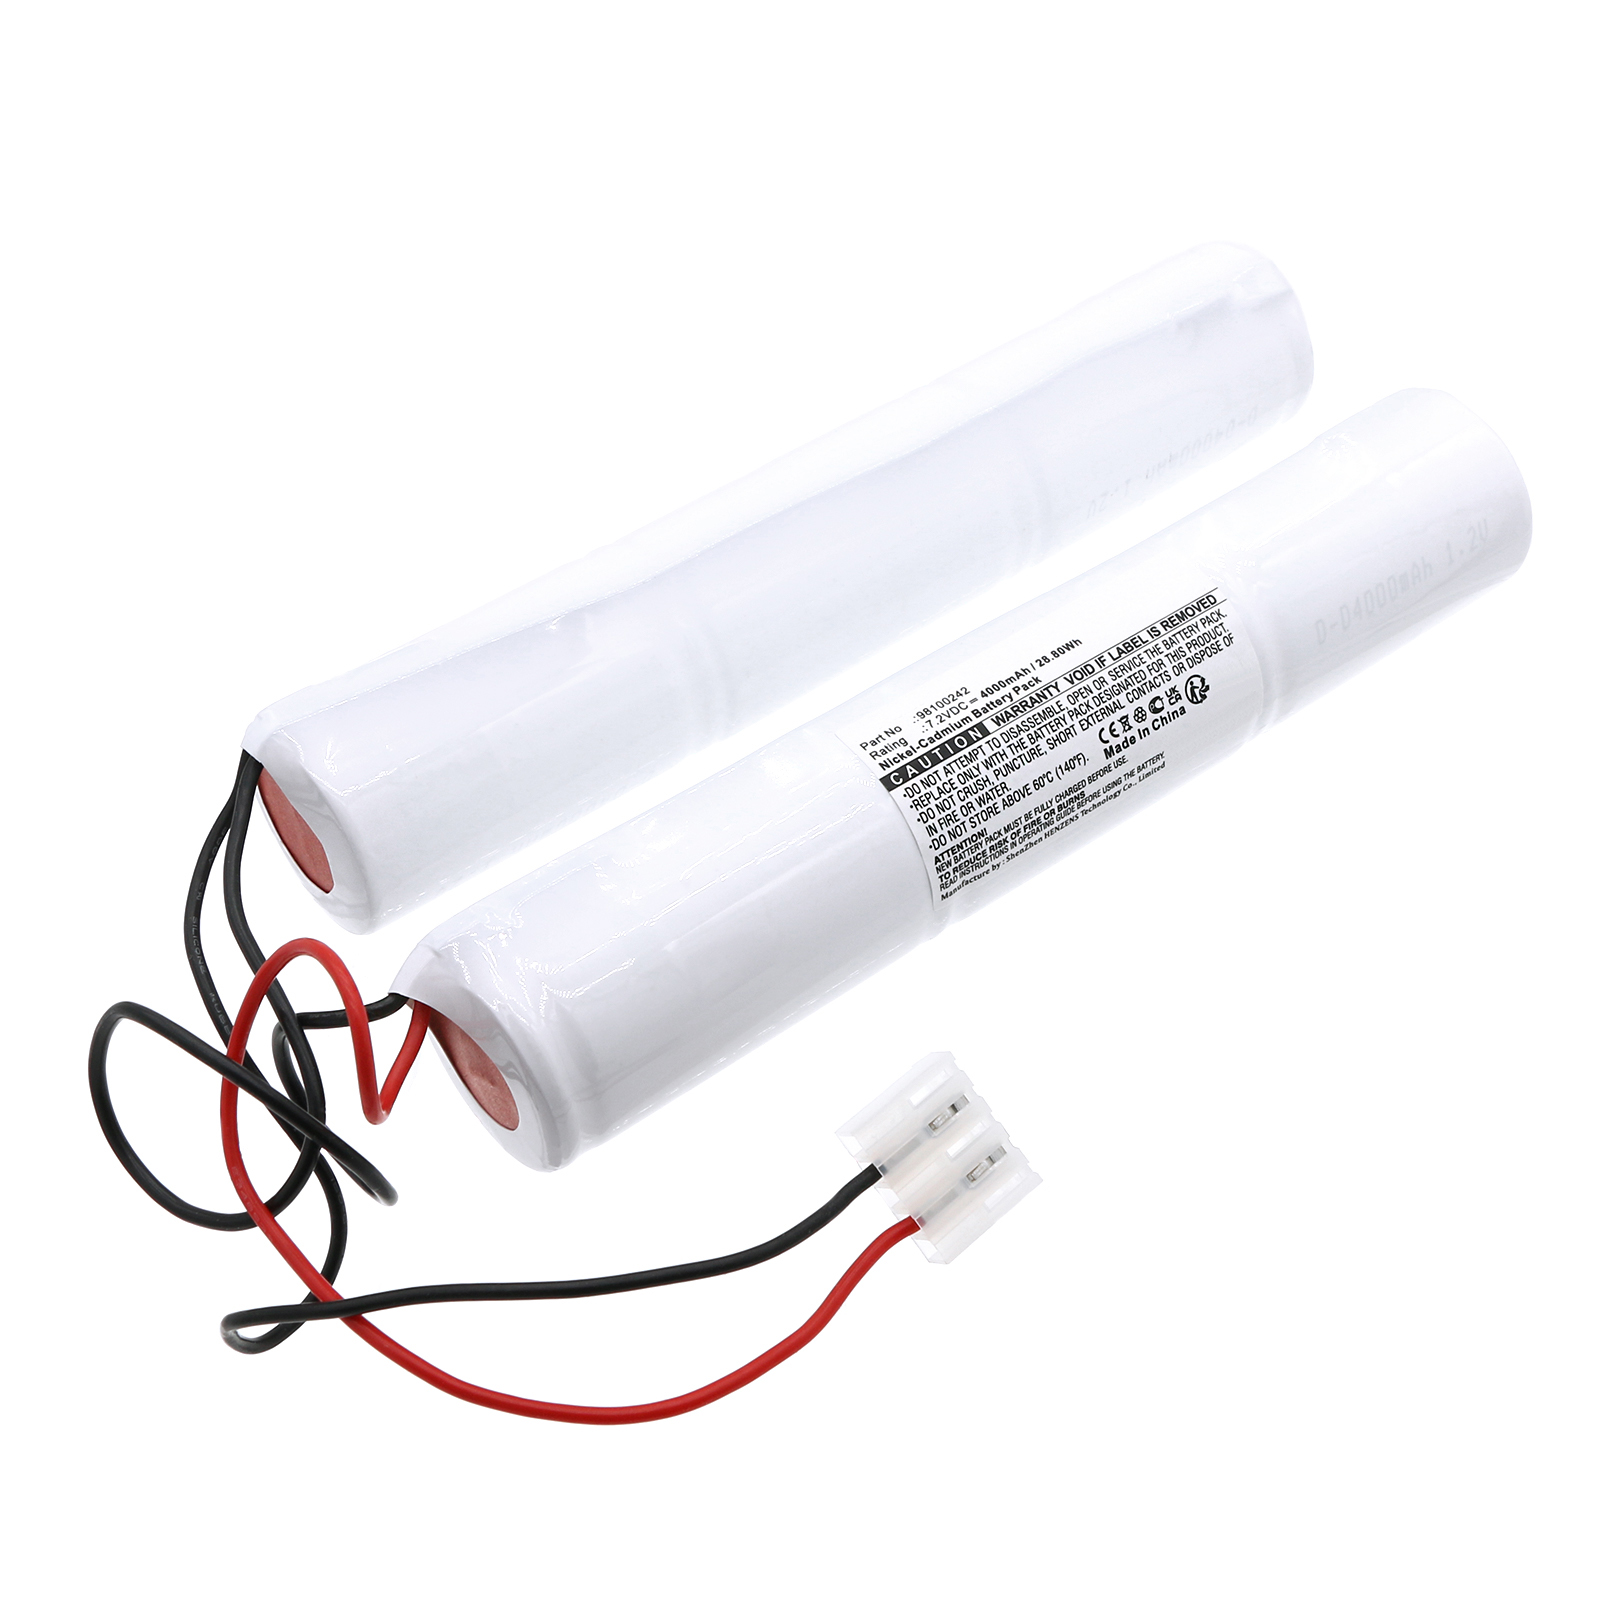 Synergy Digital Emergency Lighting Battery, Compatible with Candelux 98100242 Emergency Lighting Battery (Ni-CD, 7.2V, 4000mAh)